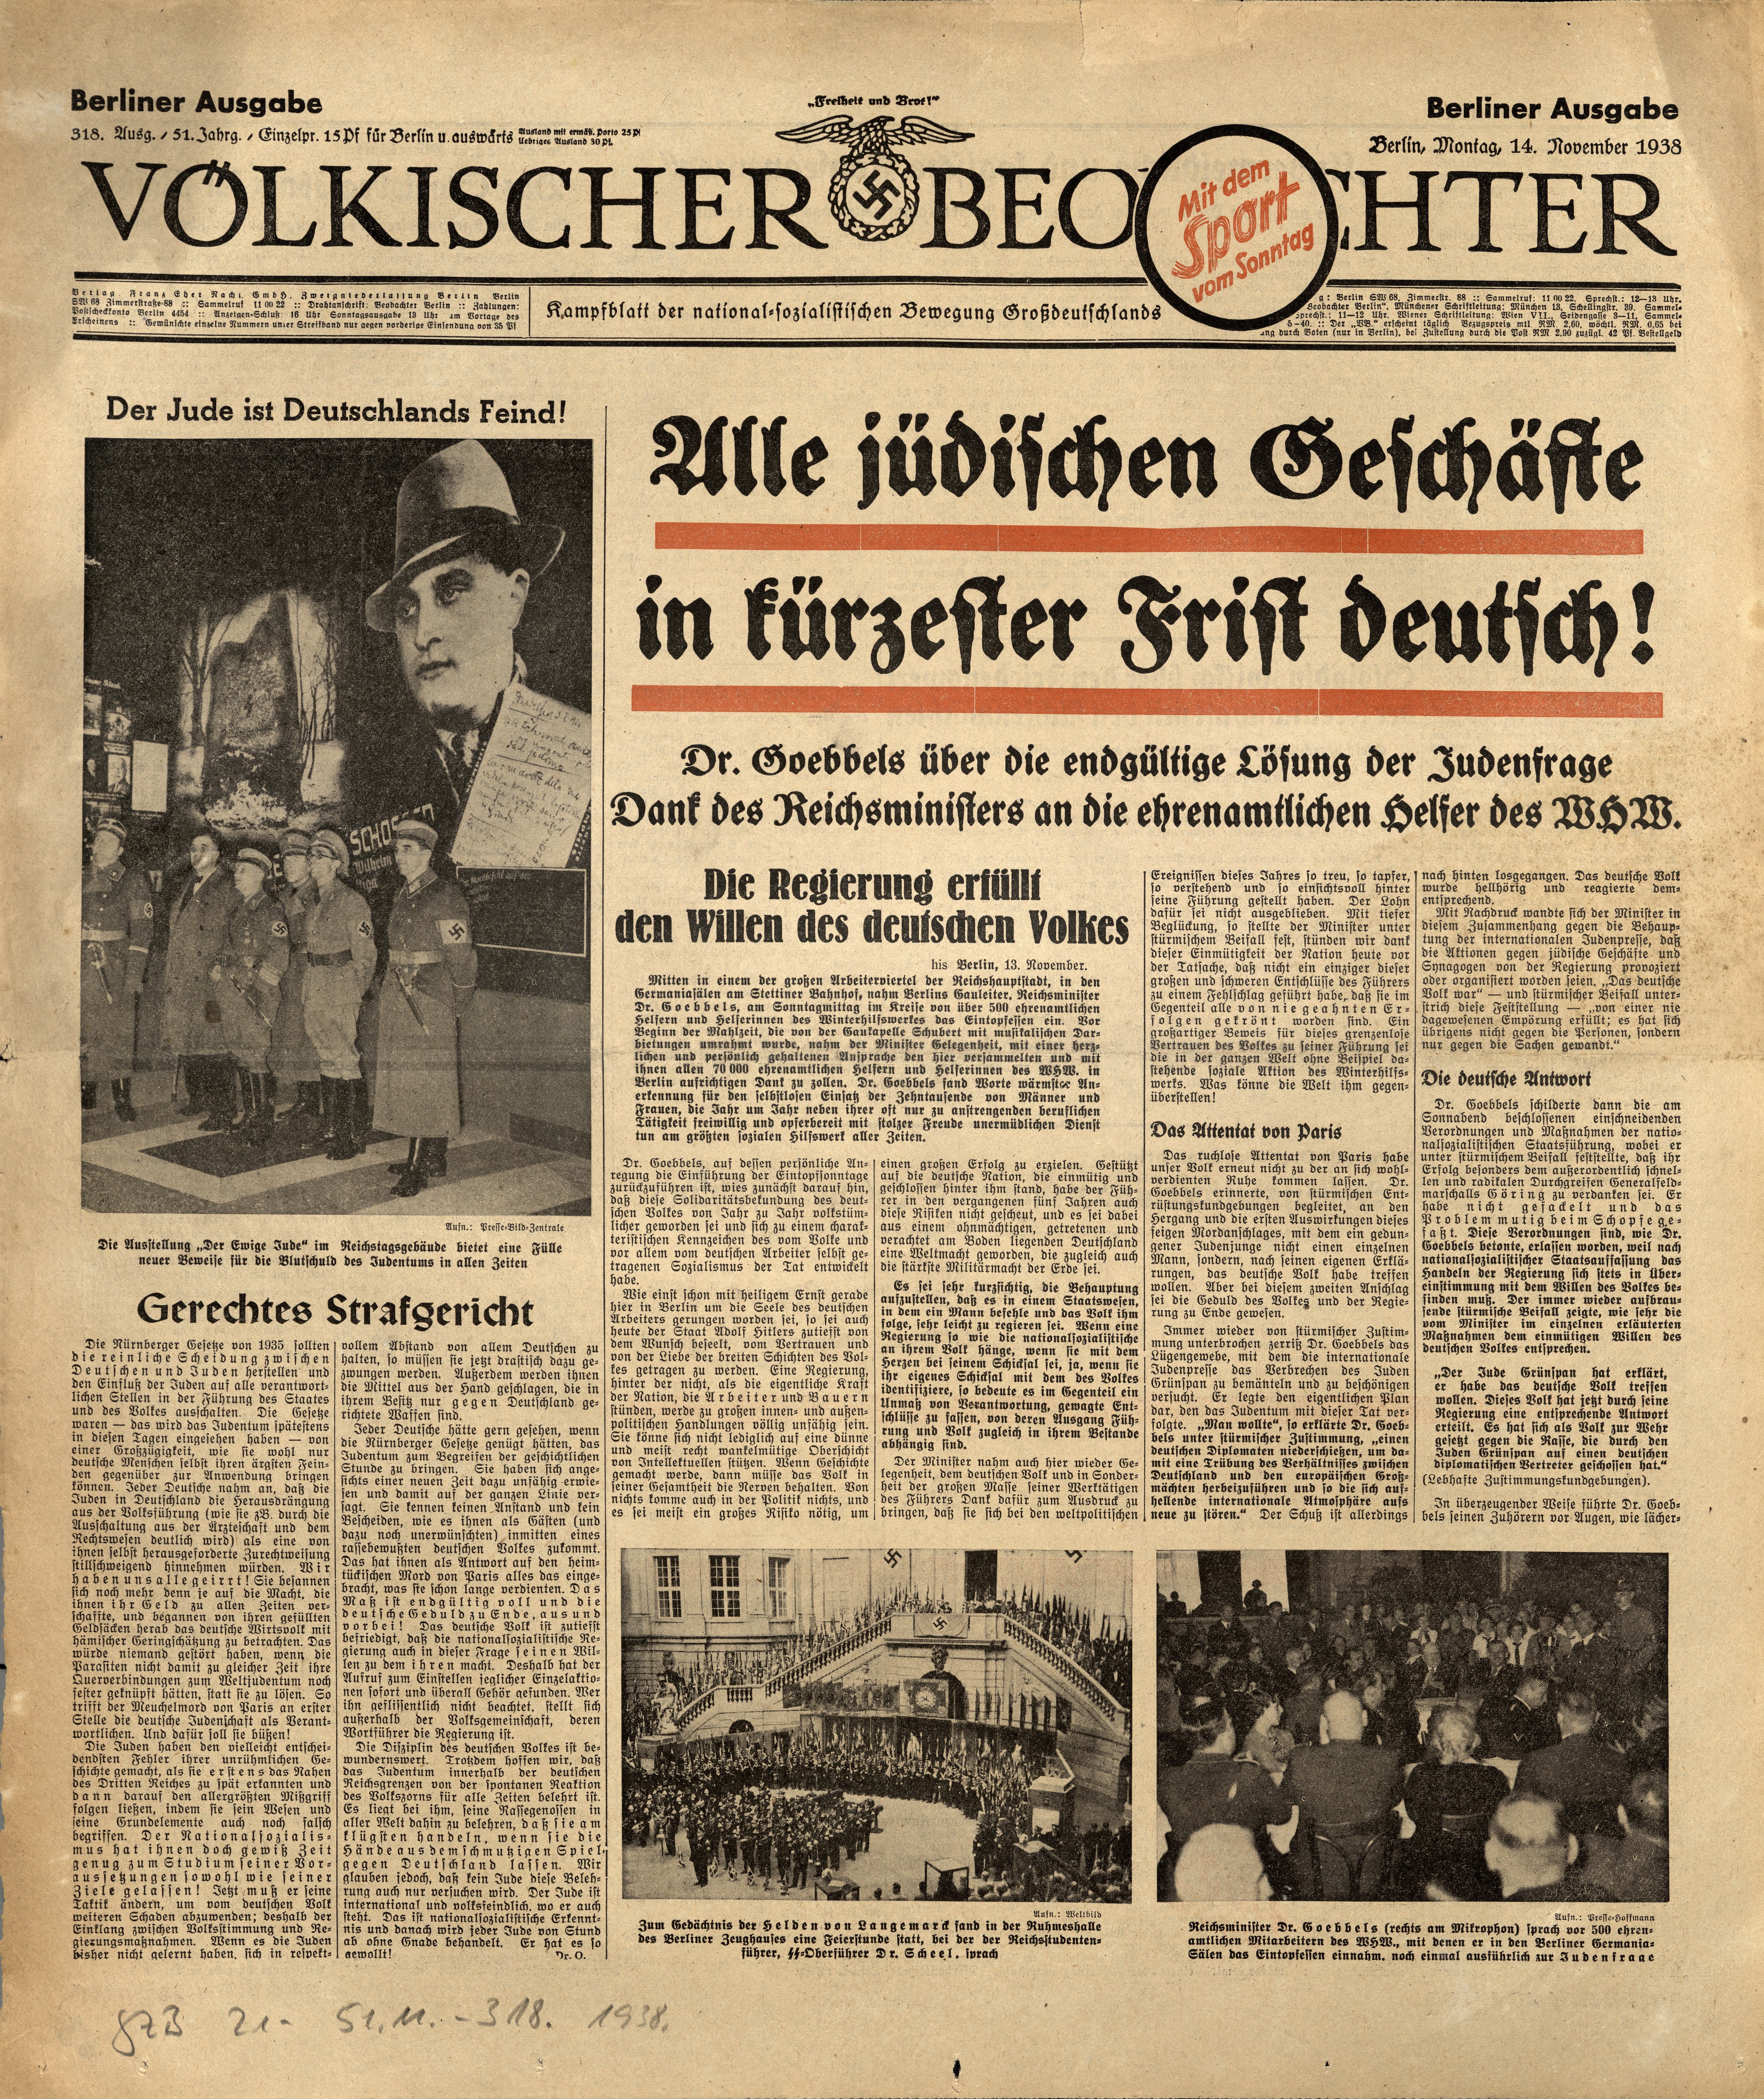 Zeitung: "Völkischer Beobachter" vom 14. November 1938